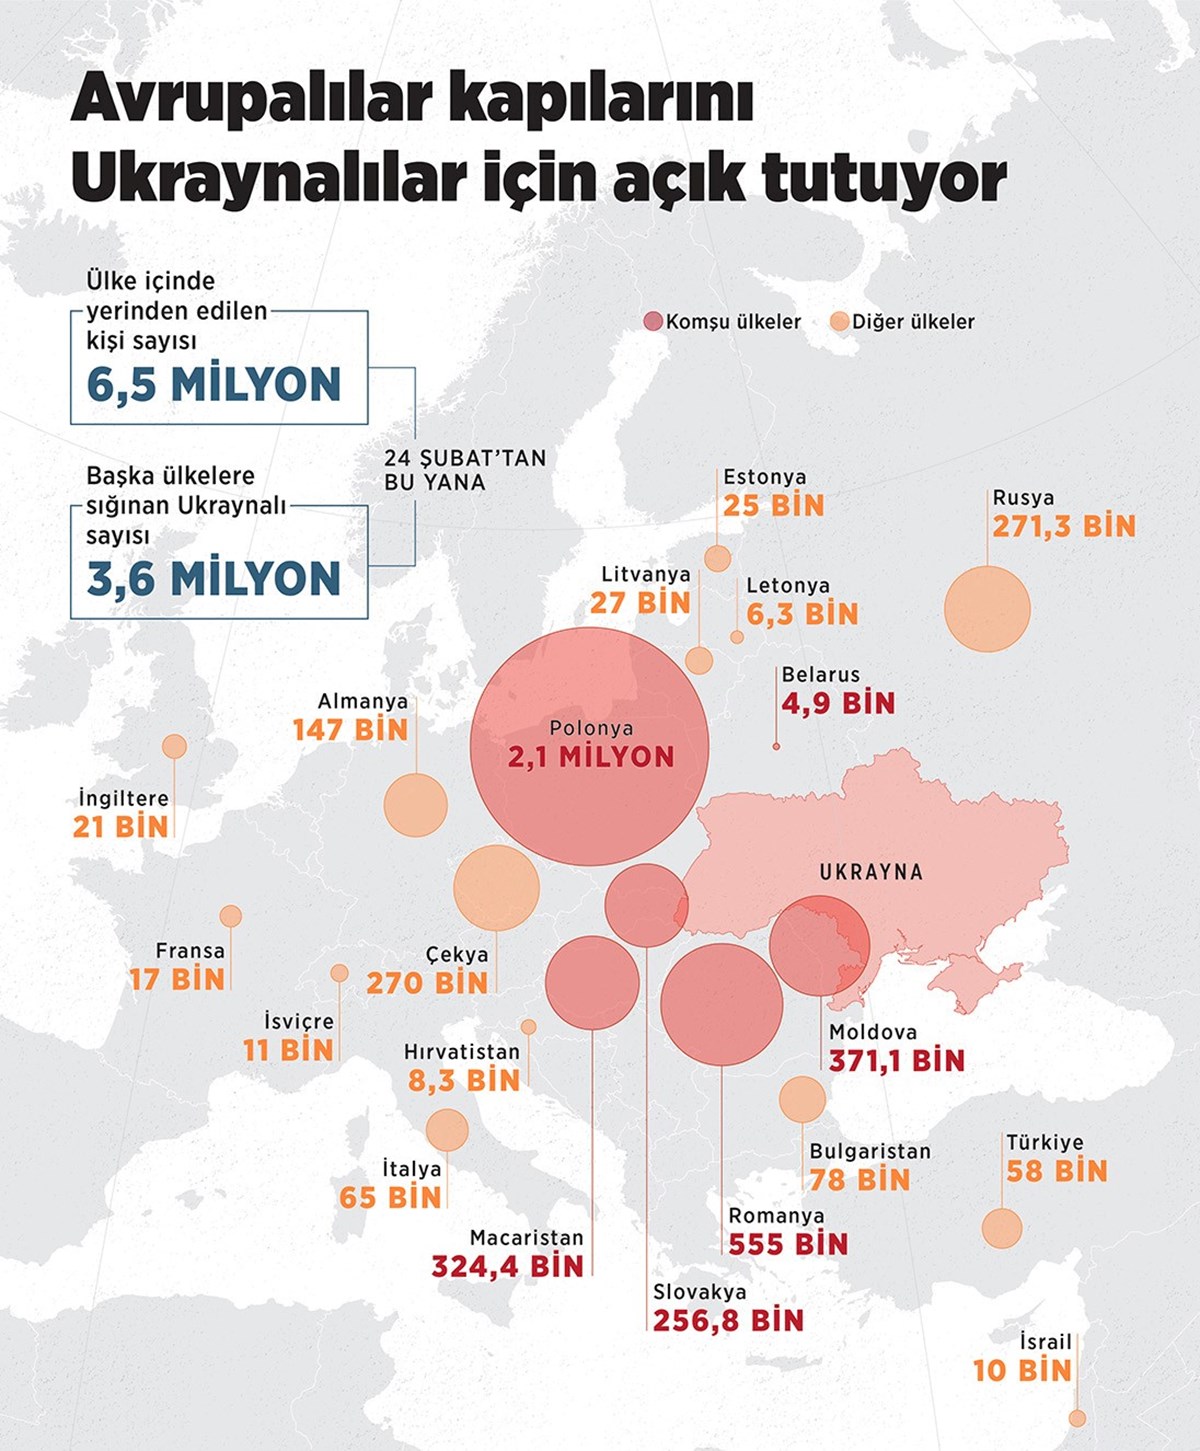 30 günde başka ülkelere giden Ukraynalı mültecilerin sayısı